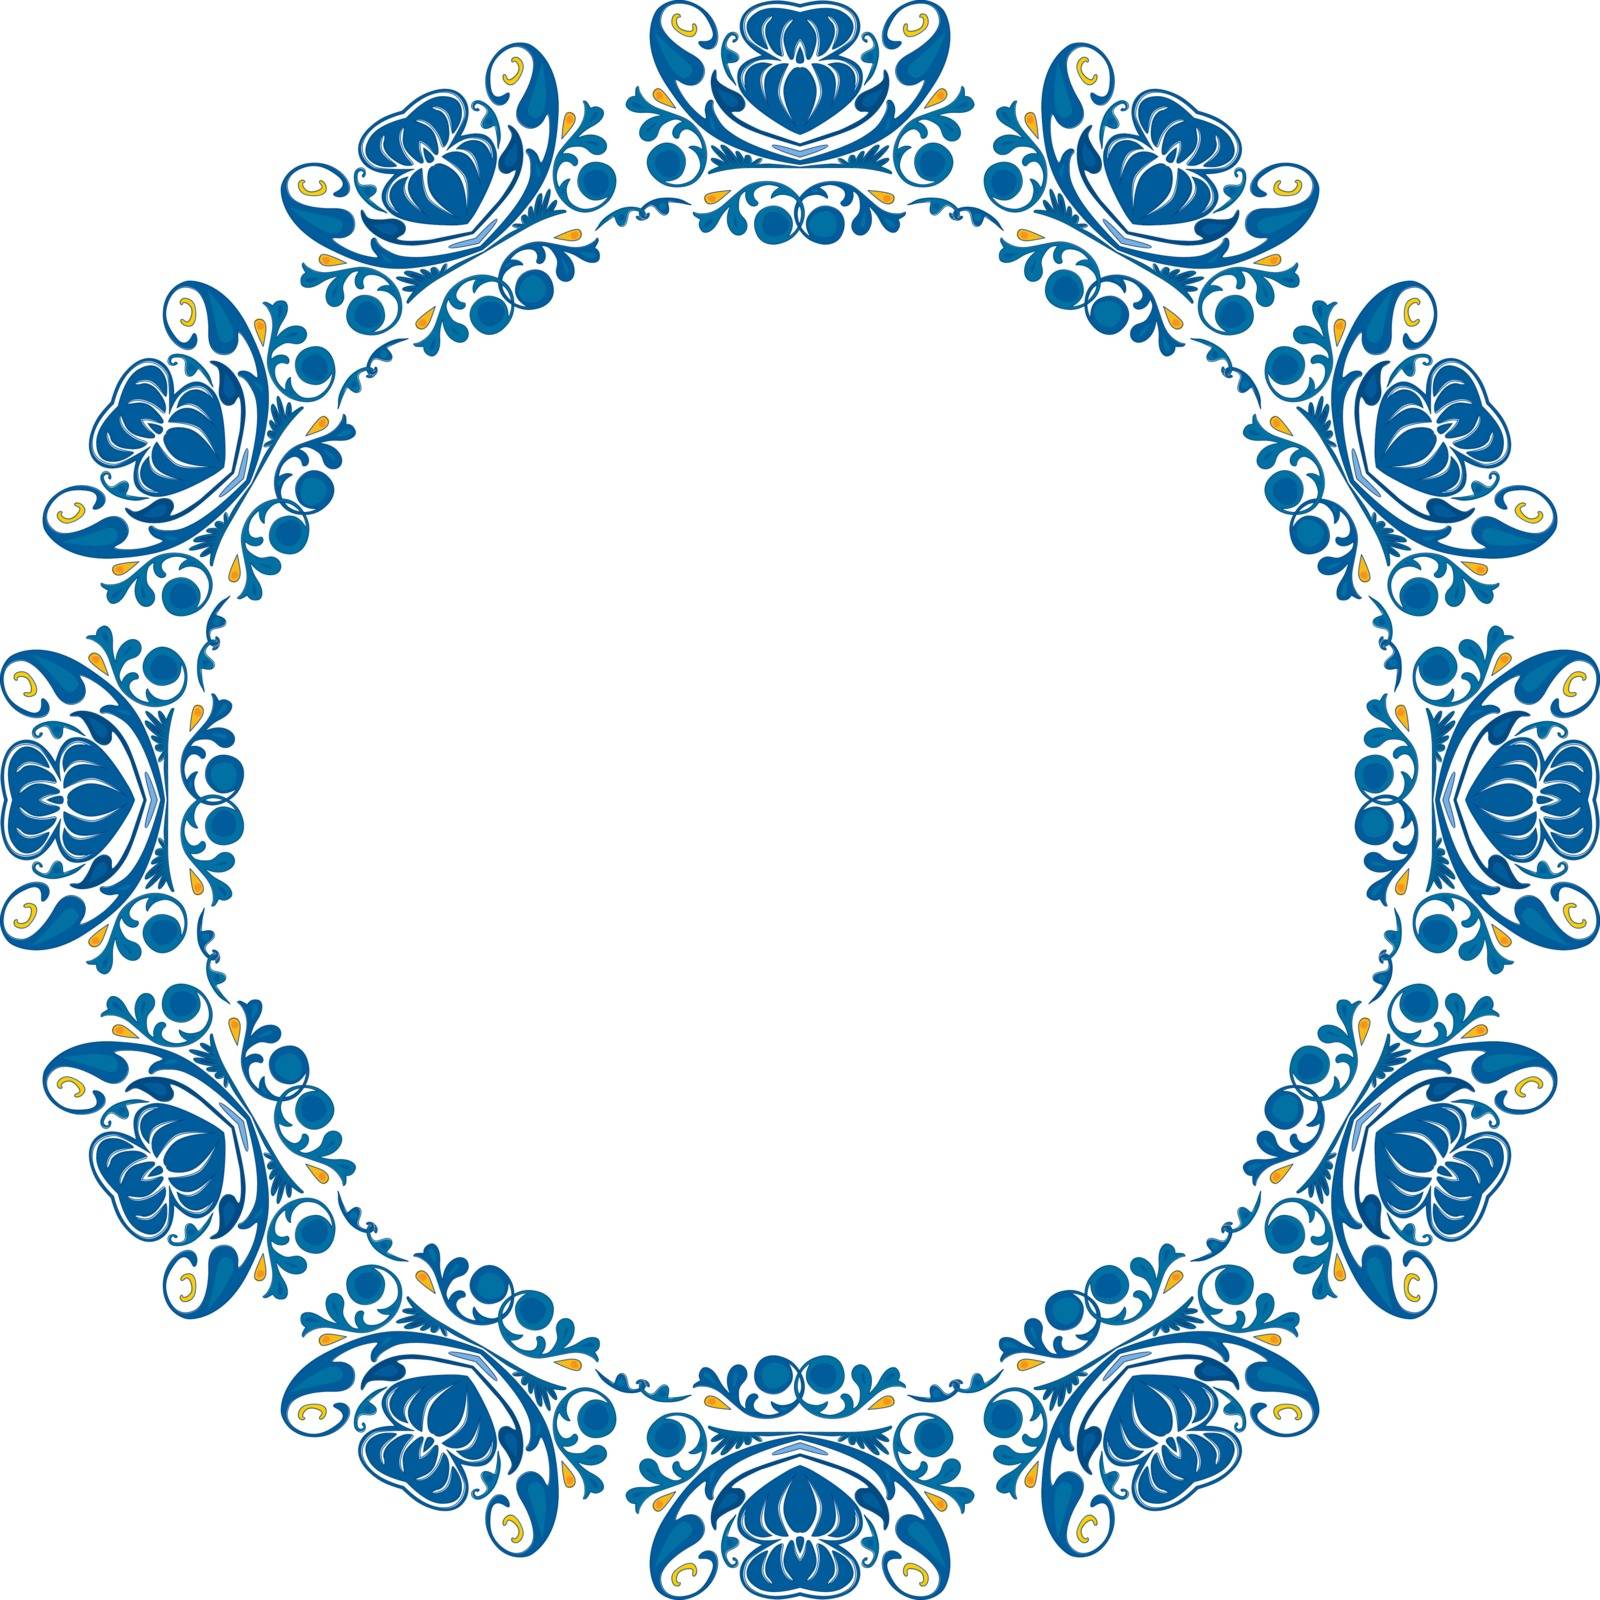 Decorative circle by nahhan